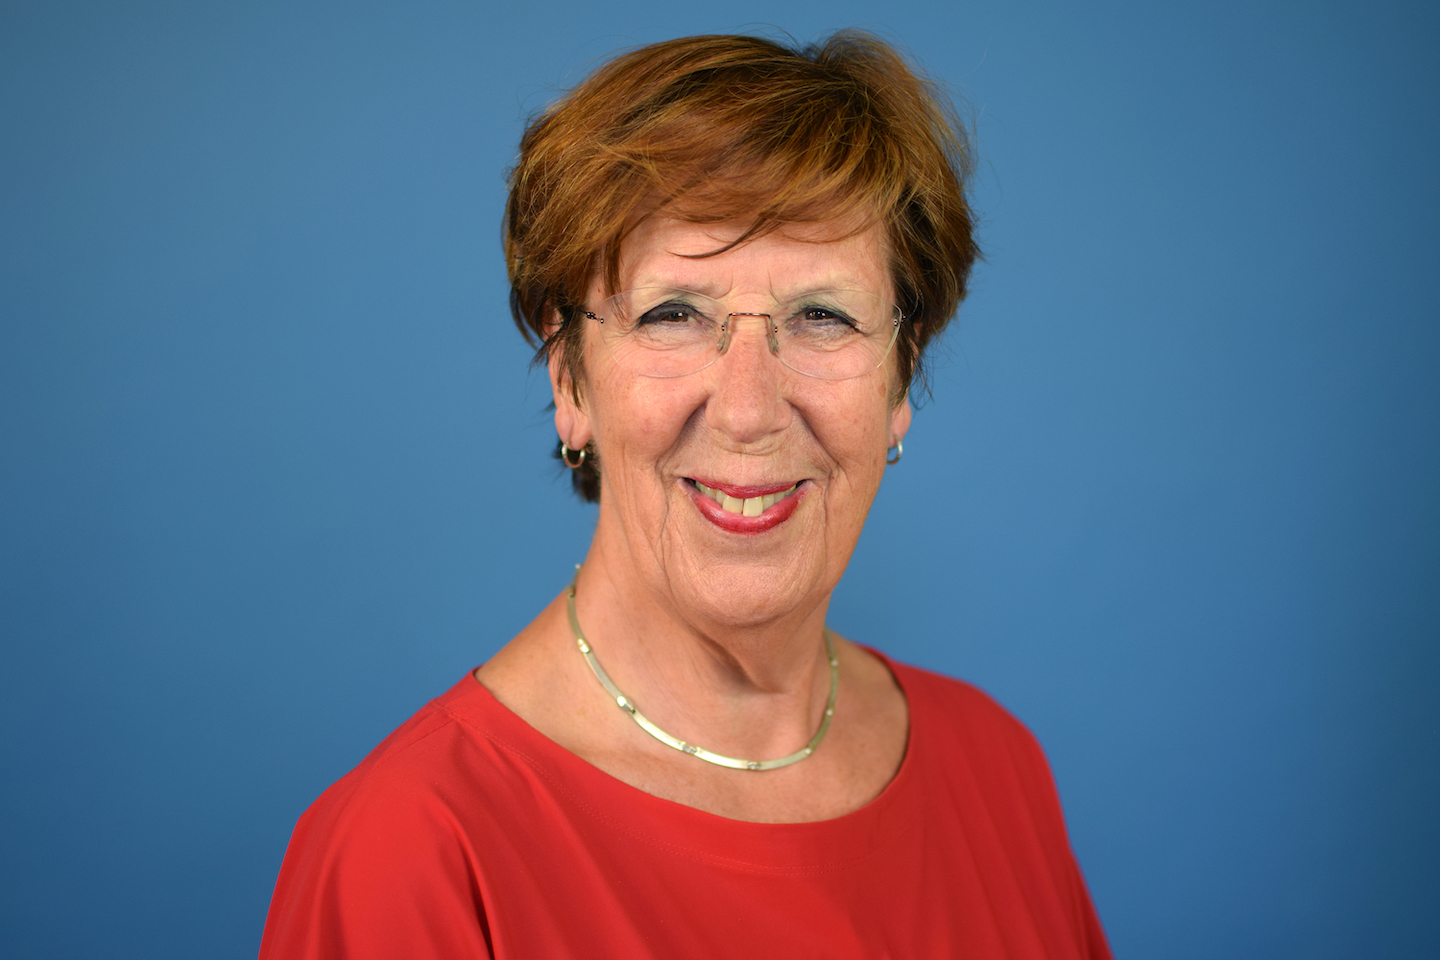 Annemarie Jorritsma-Lebbink VVD Eerste Kamer